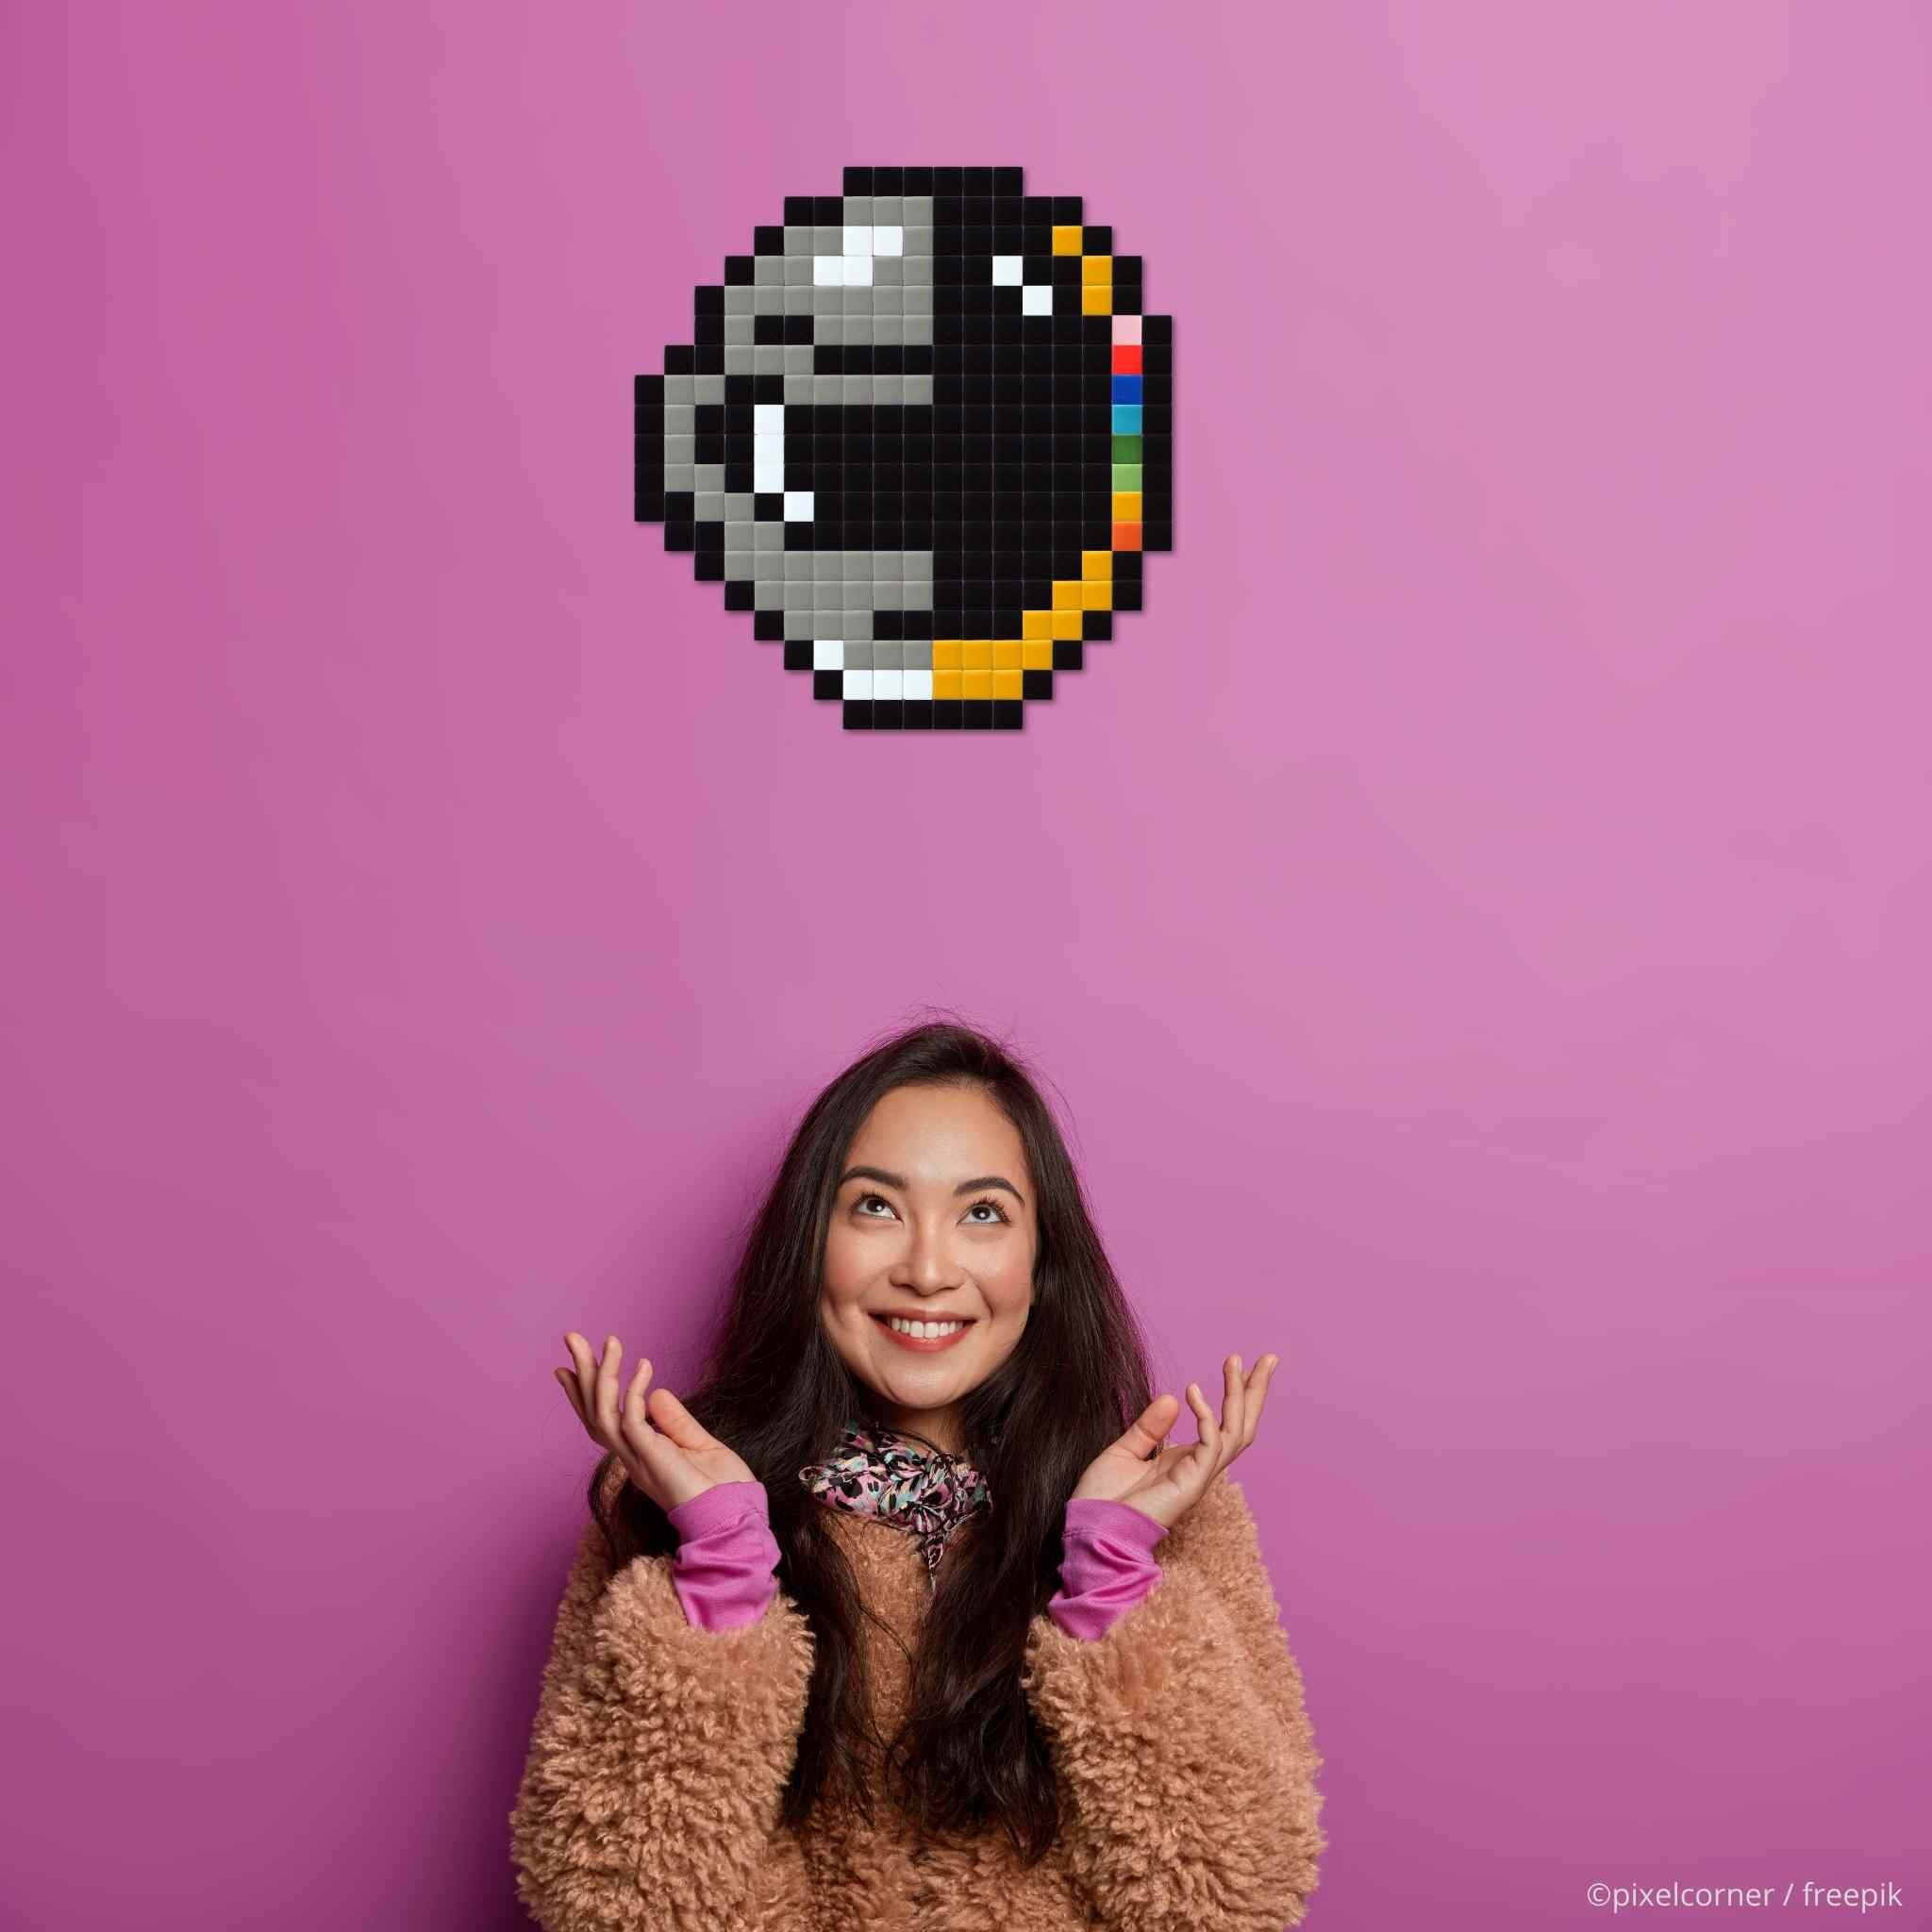 Pixel Art Kit "Paft Dunk" par Pixel Corner - Kits de loisirs créatifs